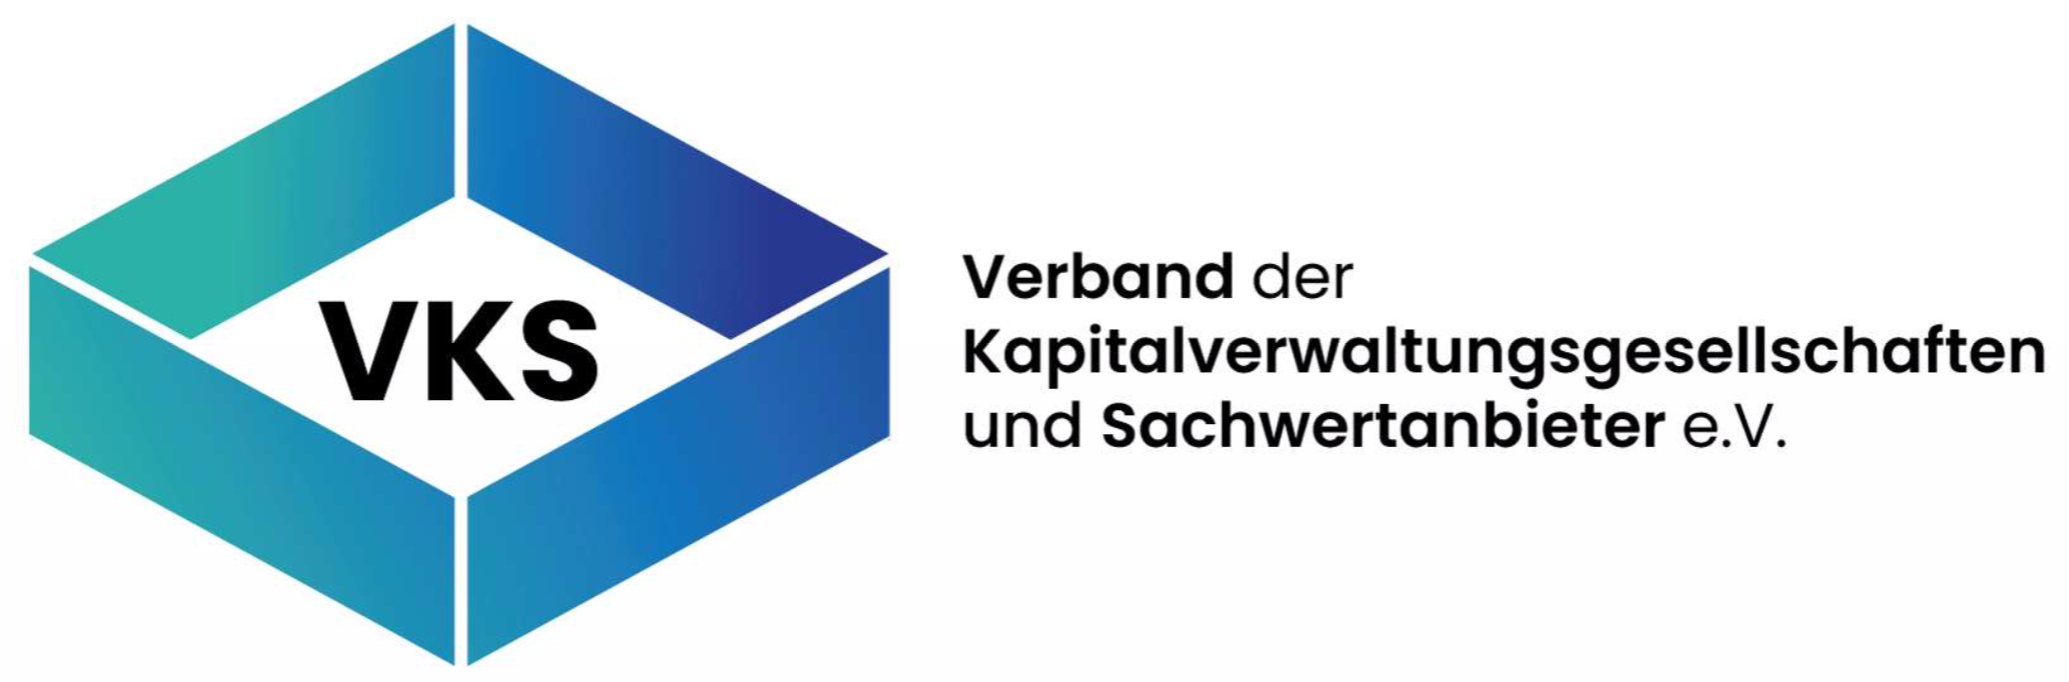 Konstituierende Gründungsveranstaltung VKS Verband der Kapitalverwaltungsgesellschaften und Sachwertanbieter